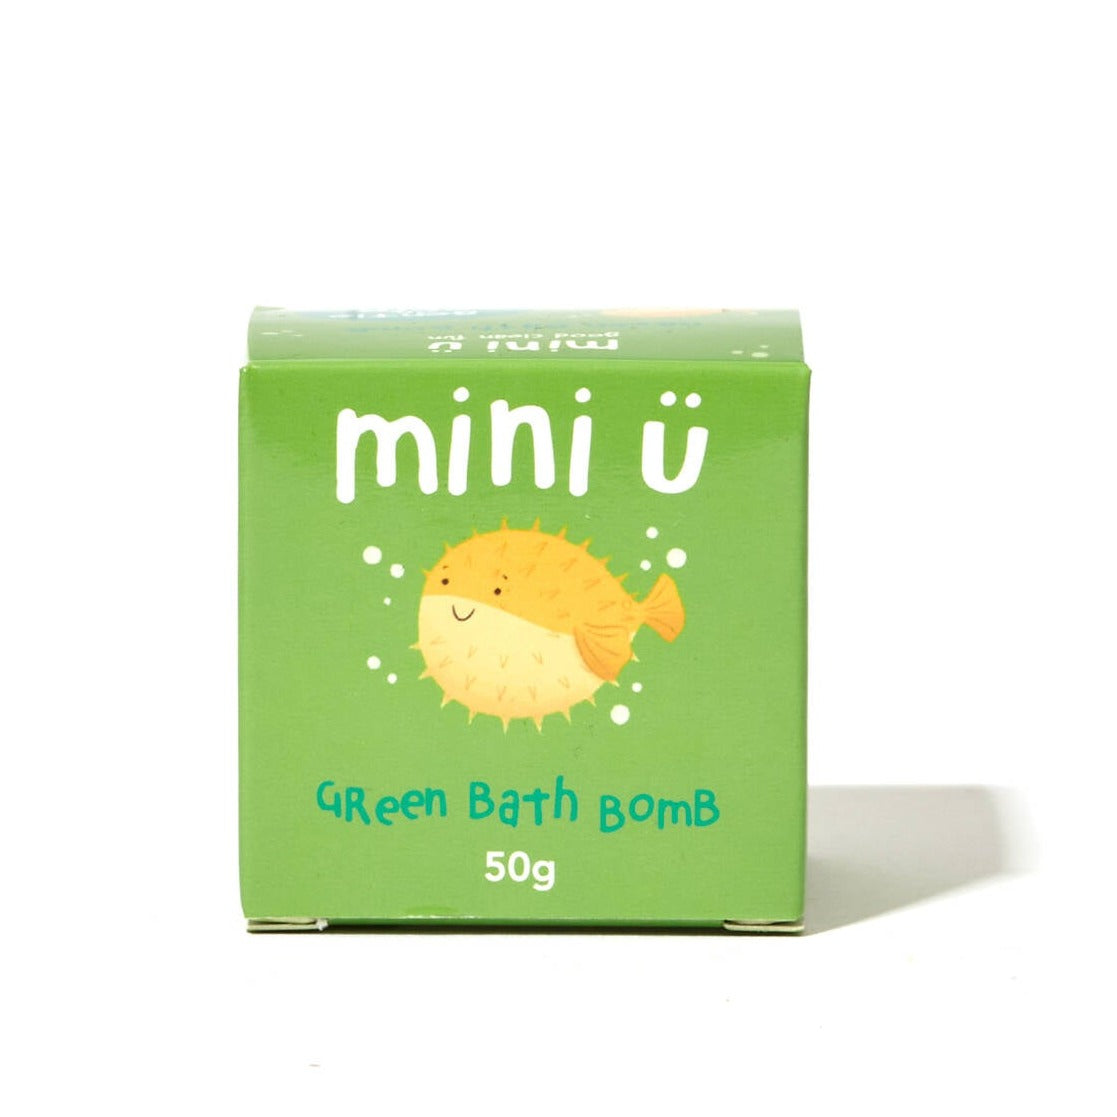 Mini u: Musogah pour se baigner avec une bombe de bain verte surprise